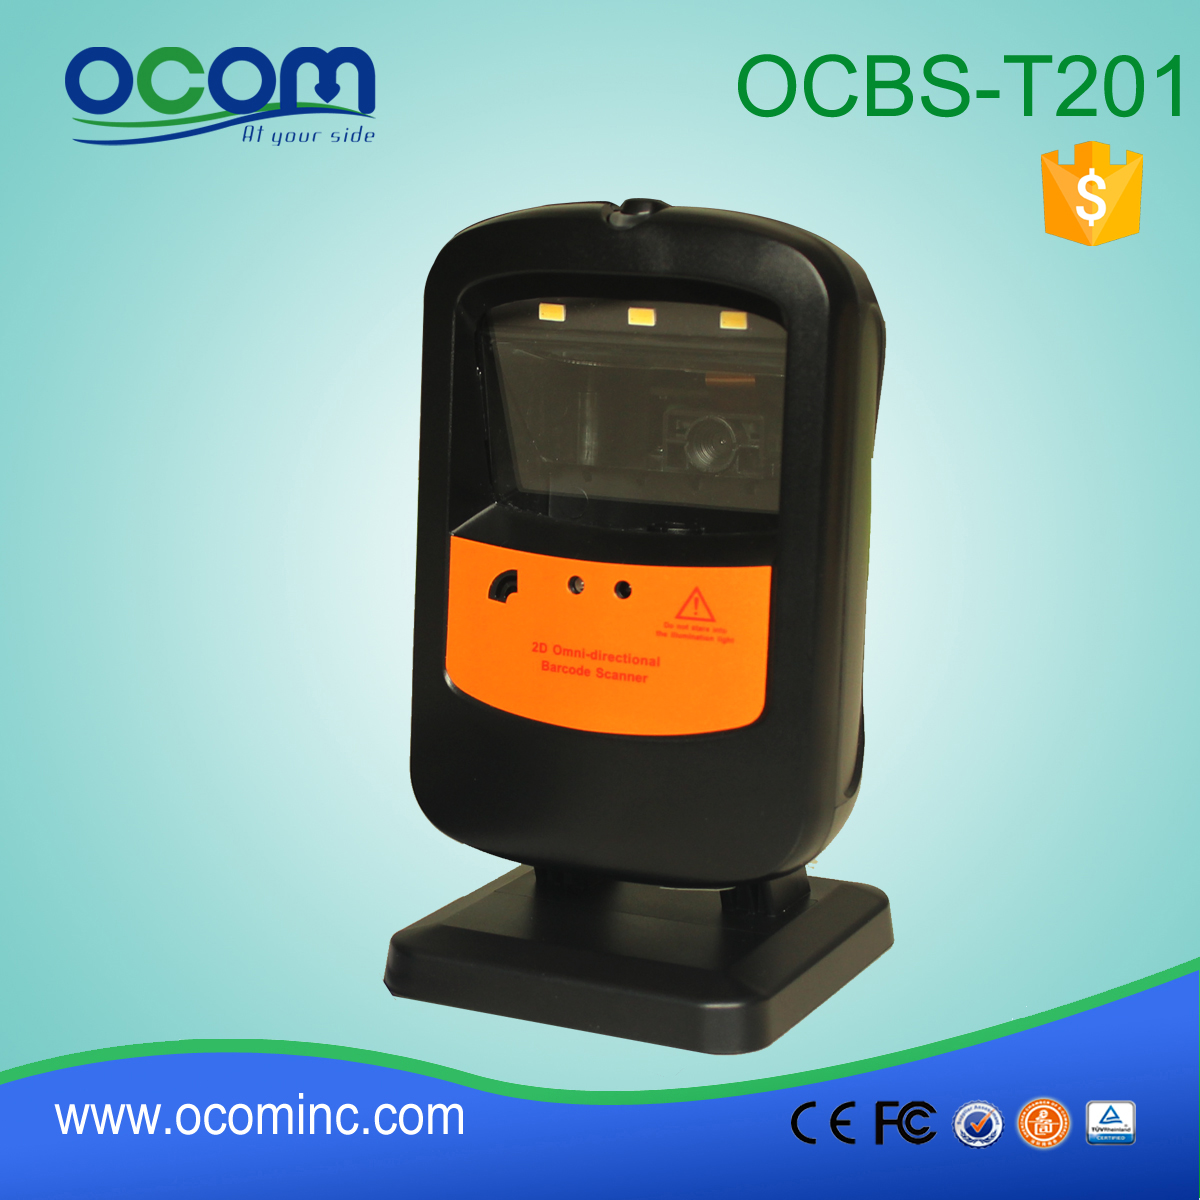 OCBs-T201: фиксированная монтирования сканер штрих-кода Mini USB, сканер штрих-кода лазерный